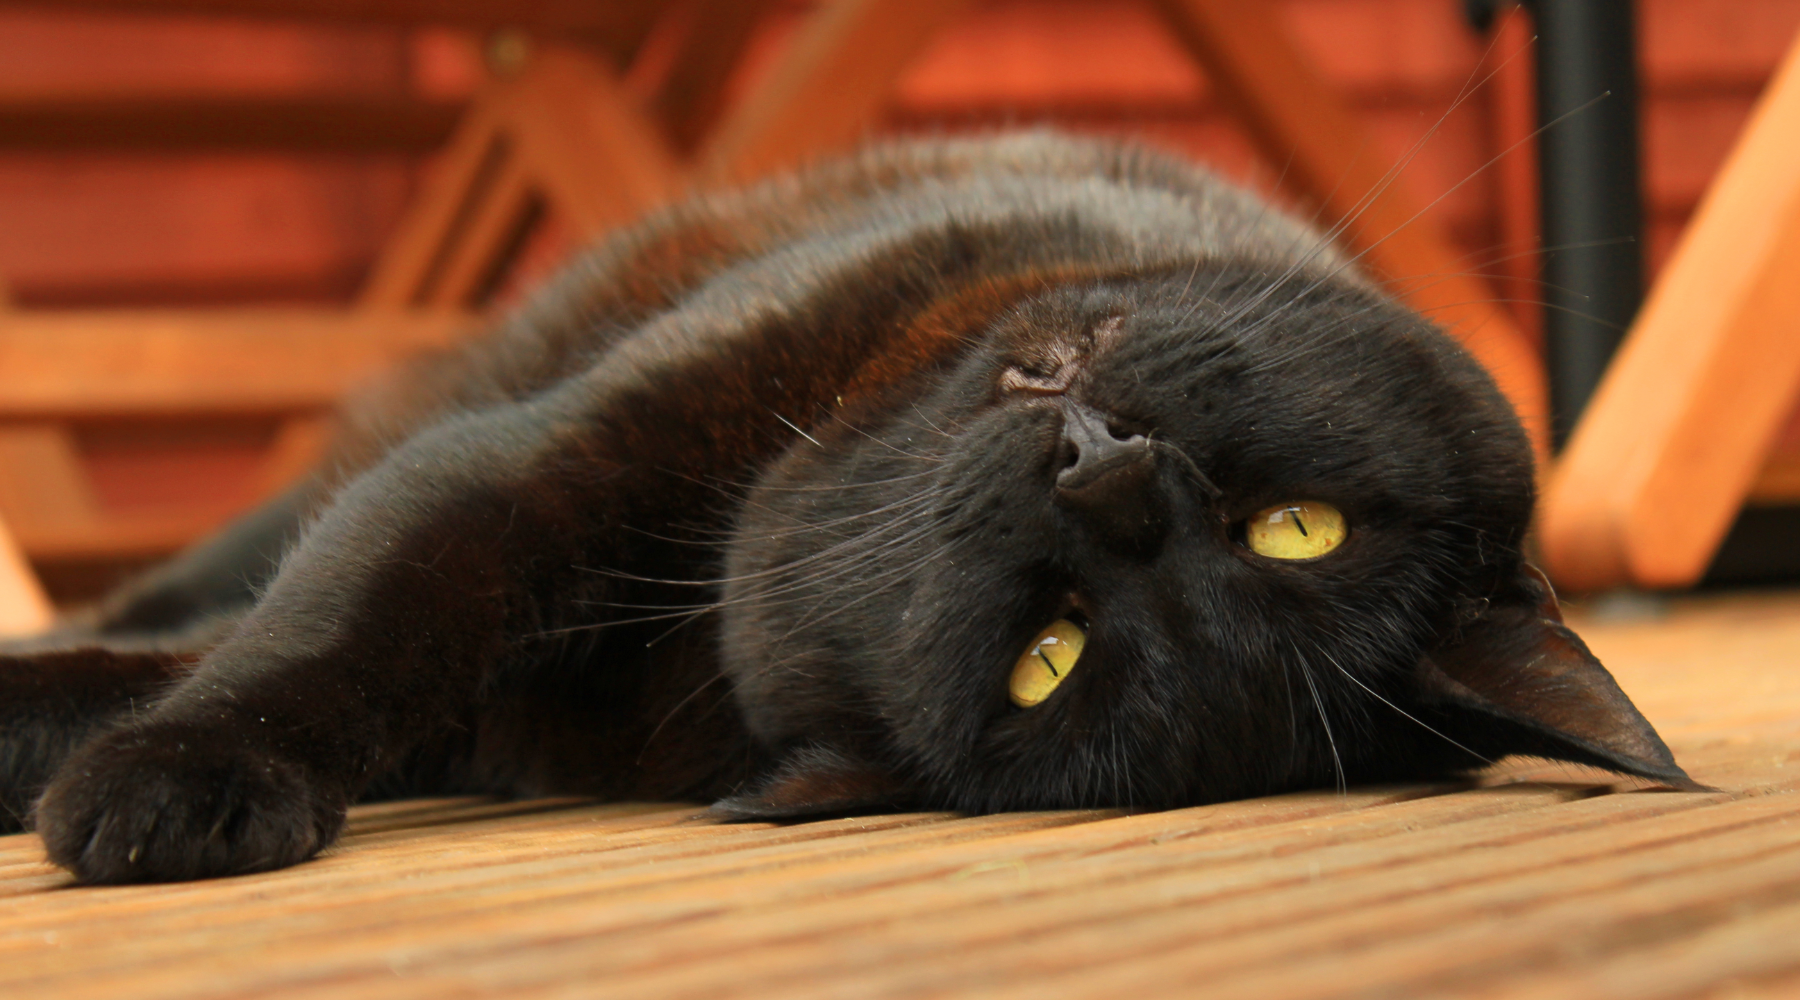 Black cat lying down